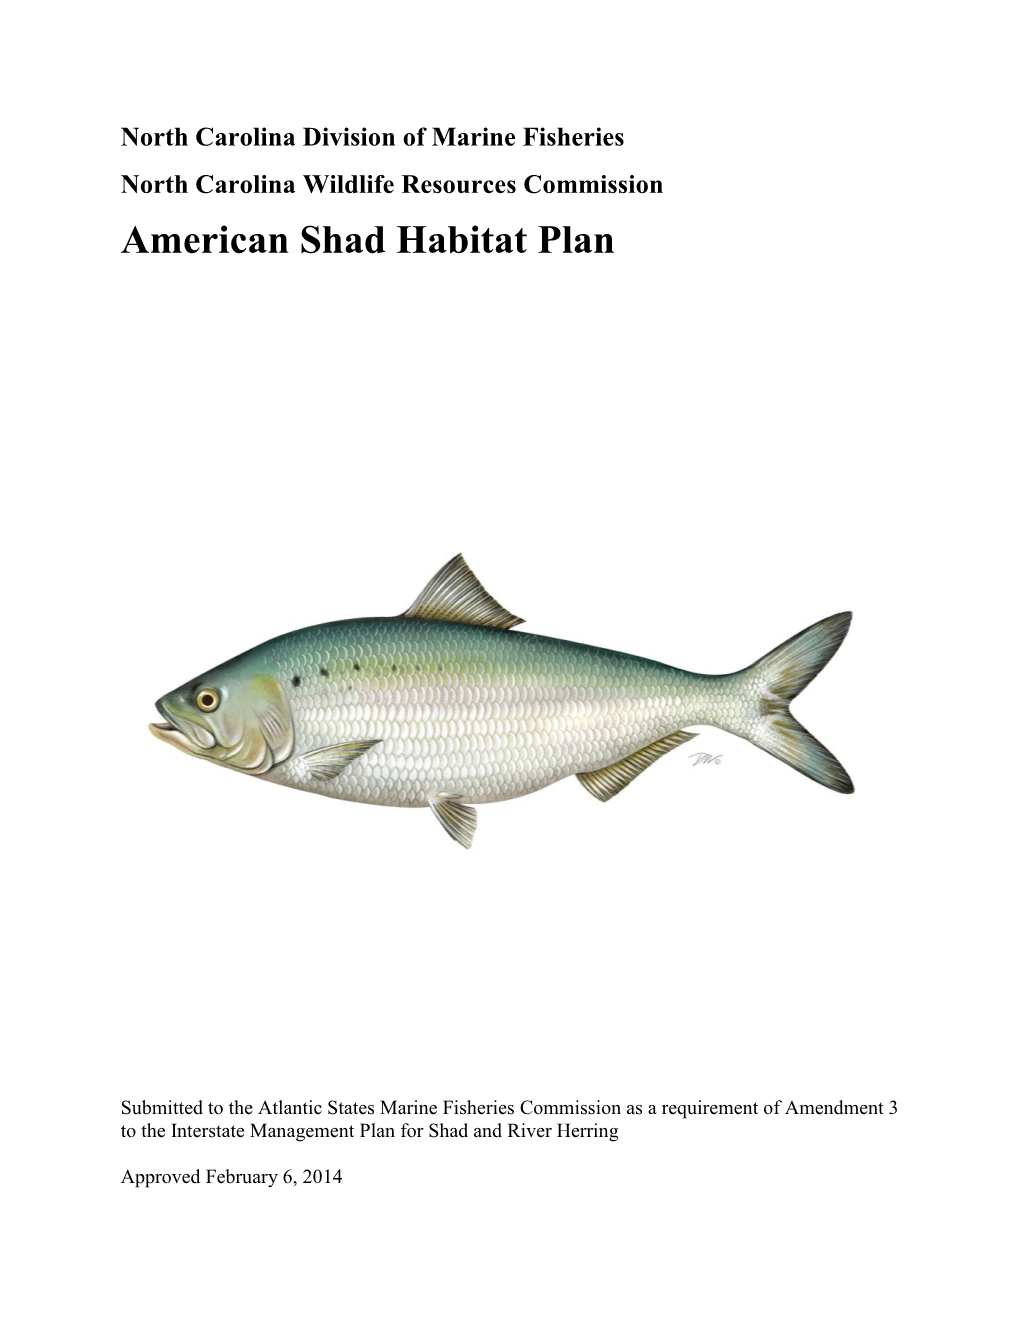 North Carolina's American Shad Habitat Plan